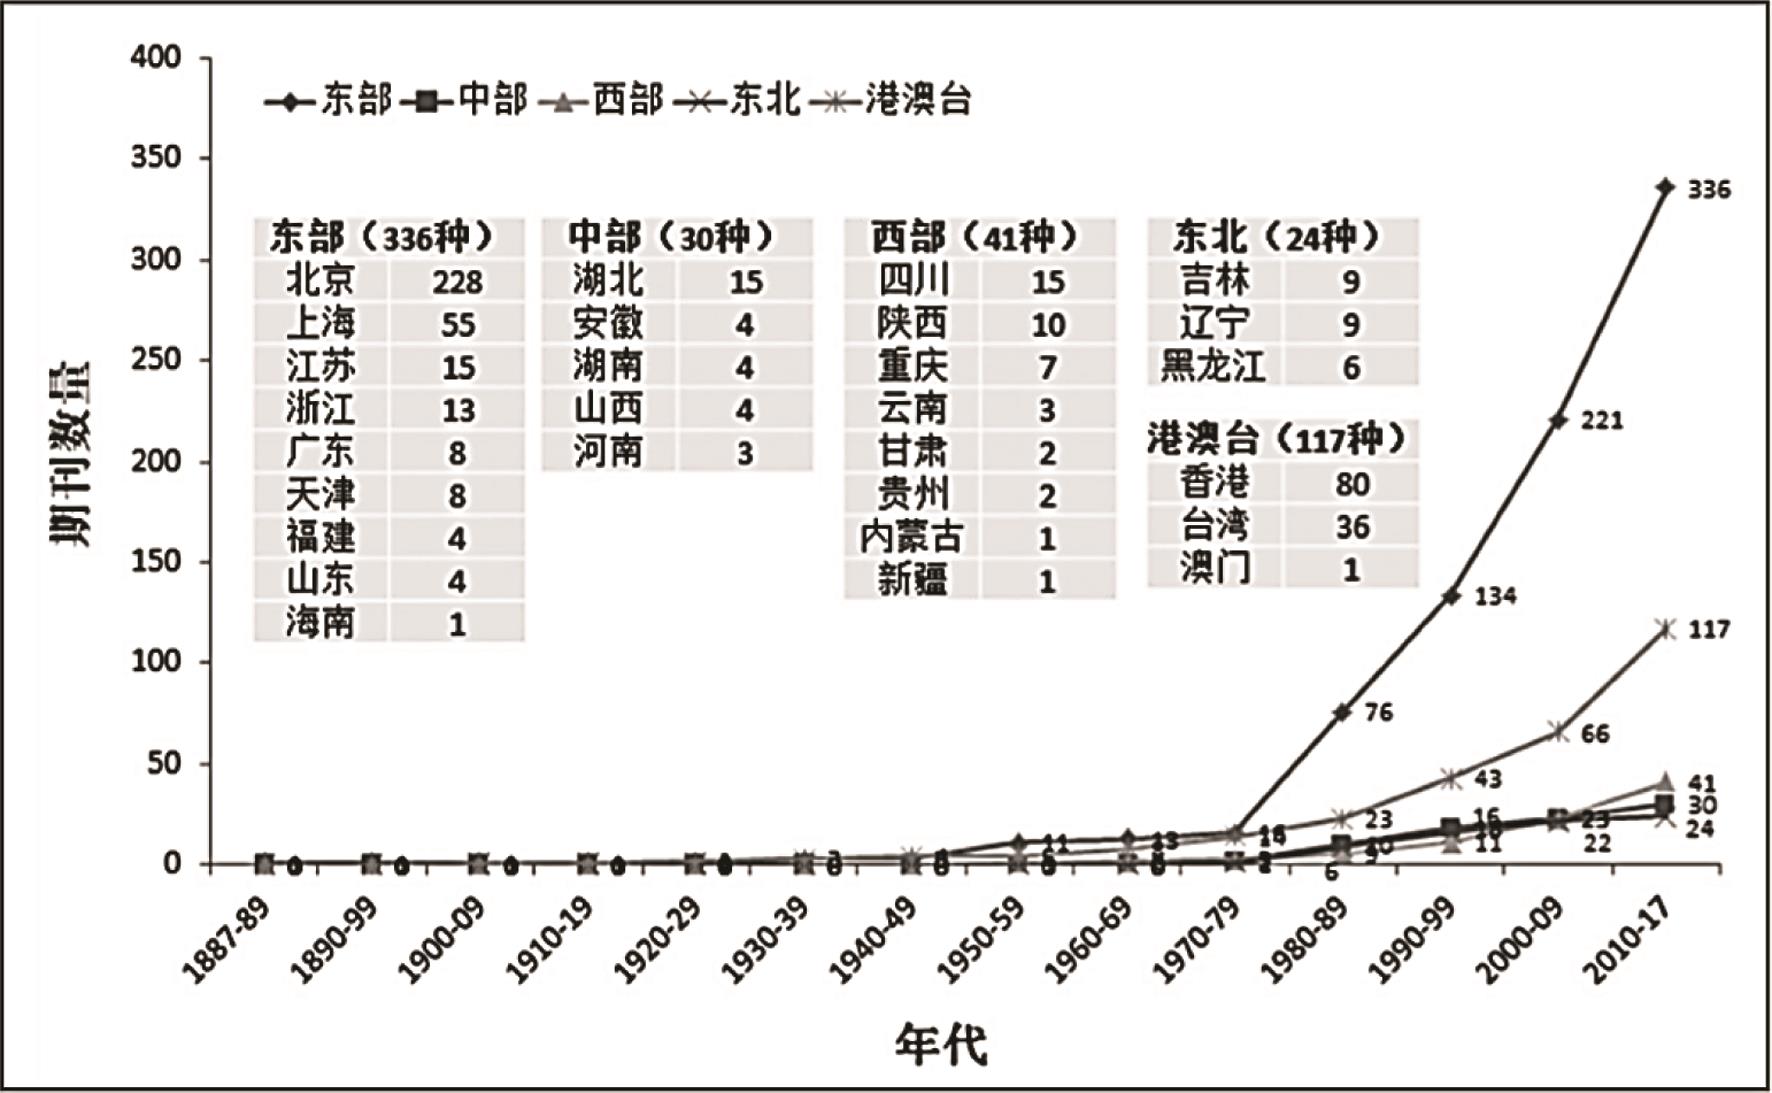 1887-2017年中国创办英文学术期刊的地域分布（含港、澳、台）。